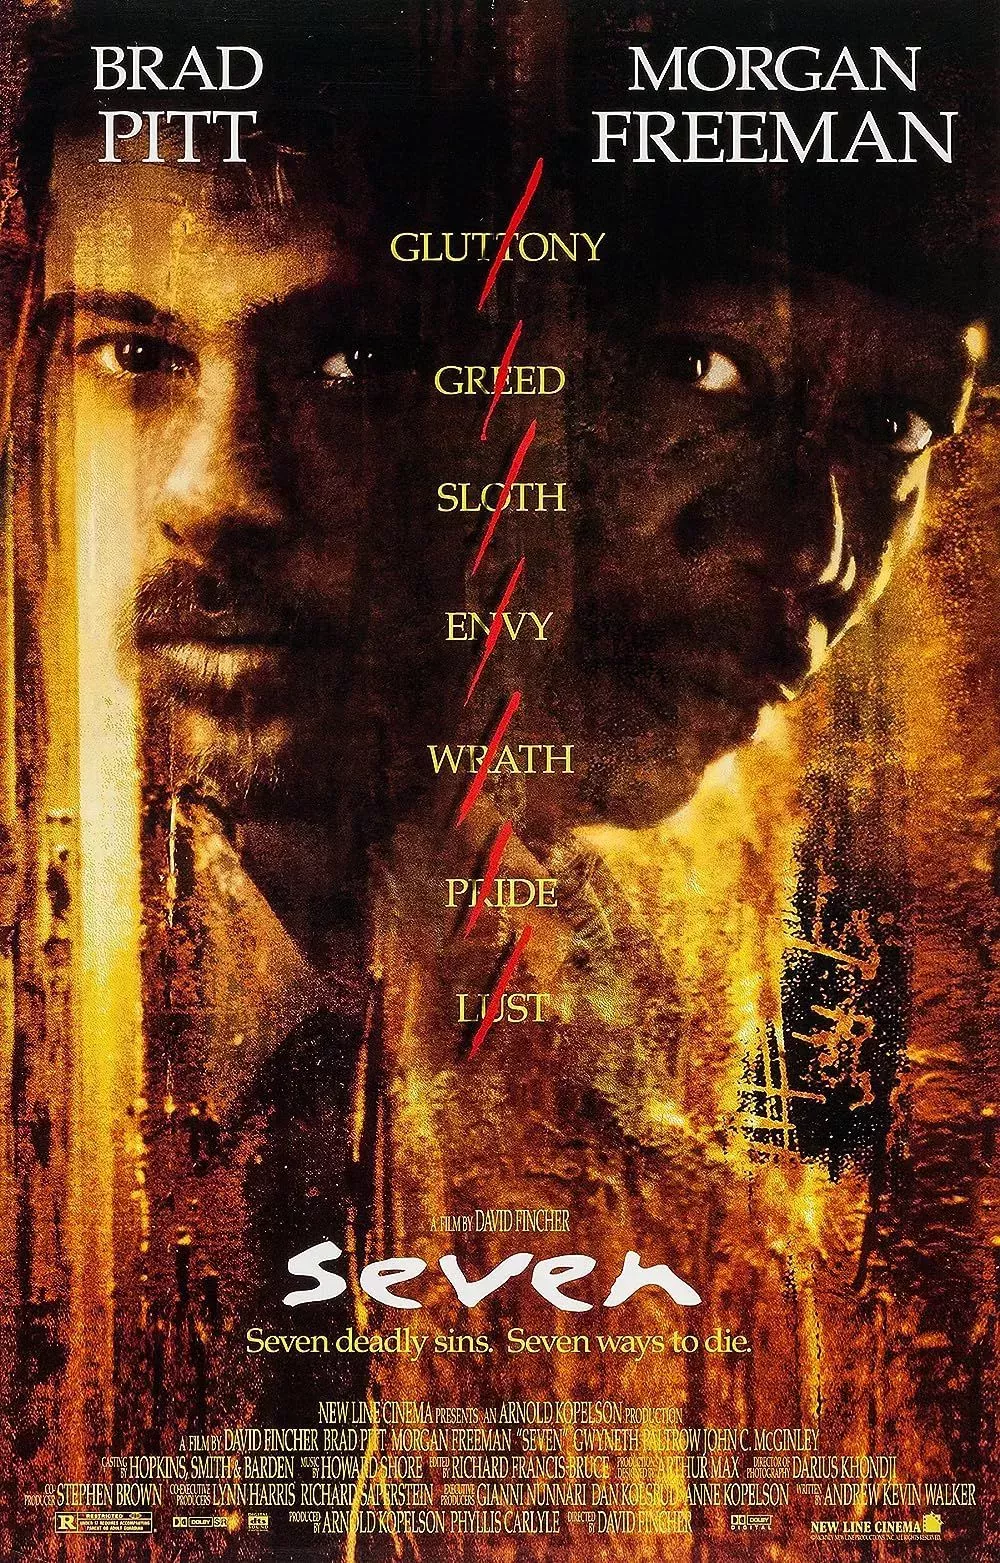 Brad Pitt and Morgan Freeman on Se7en Poster